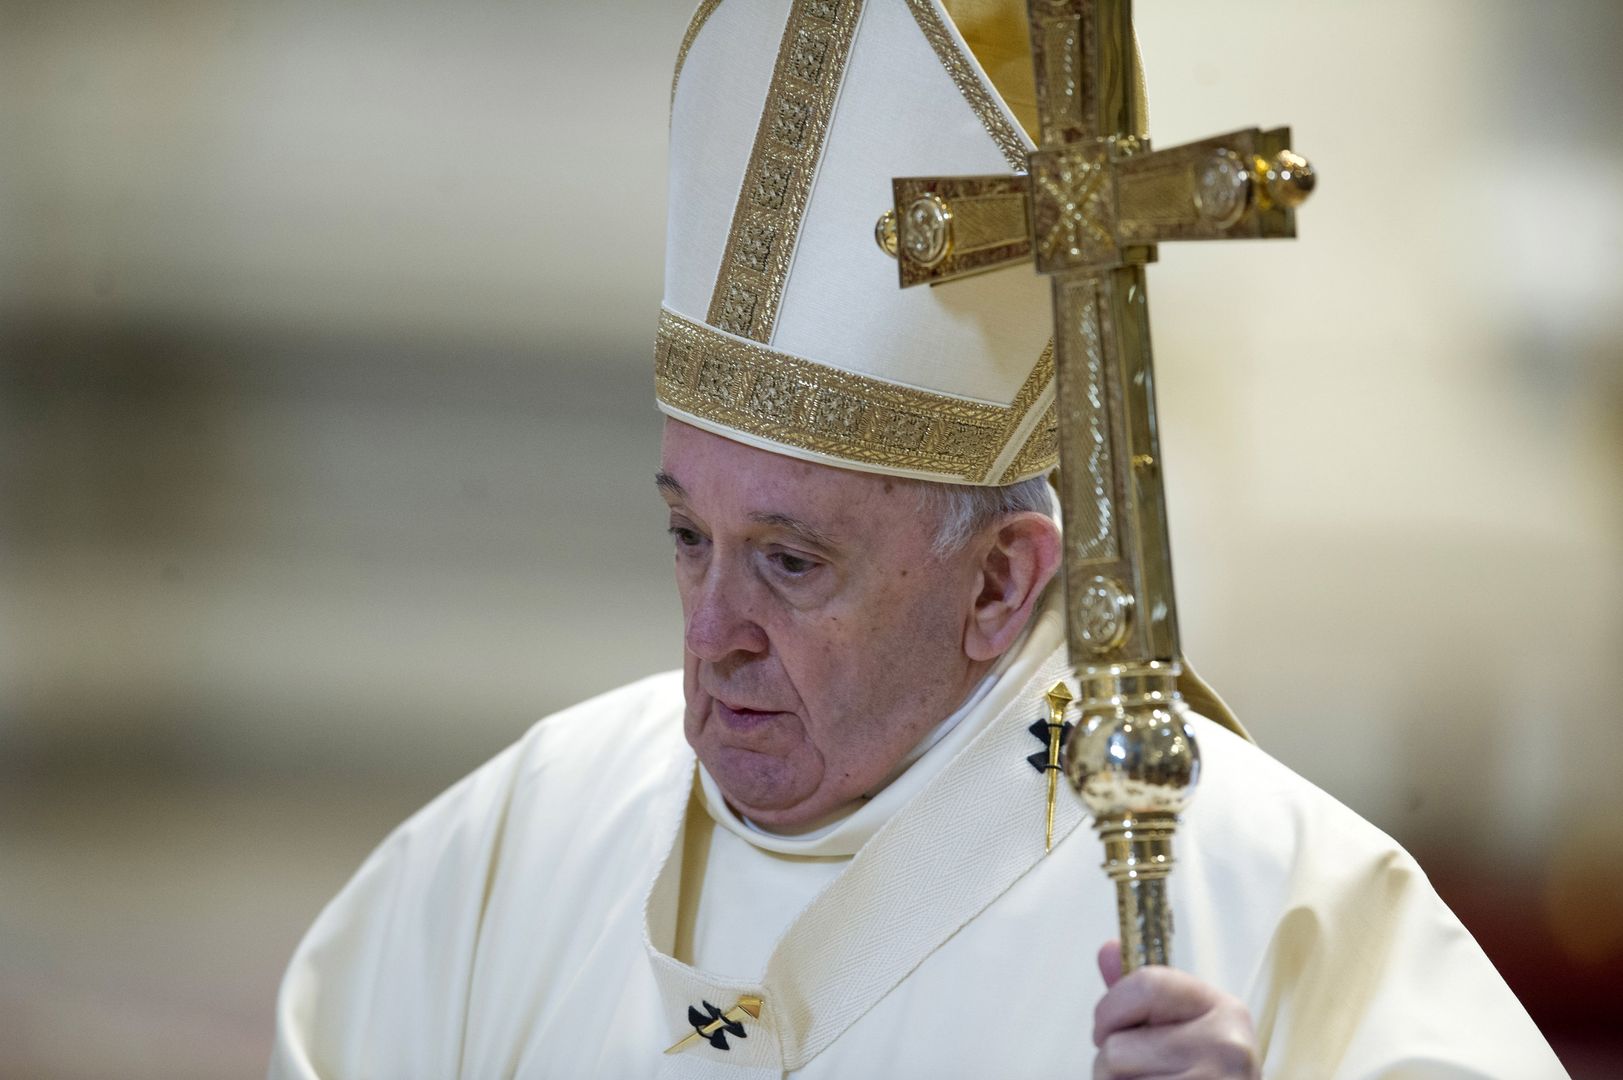 Papież Franciszek pogrążony w smutku. "Wzywa błogosławieństwa Pana"